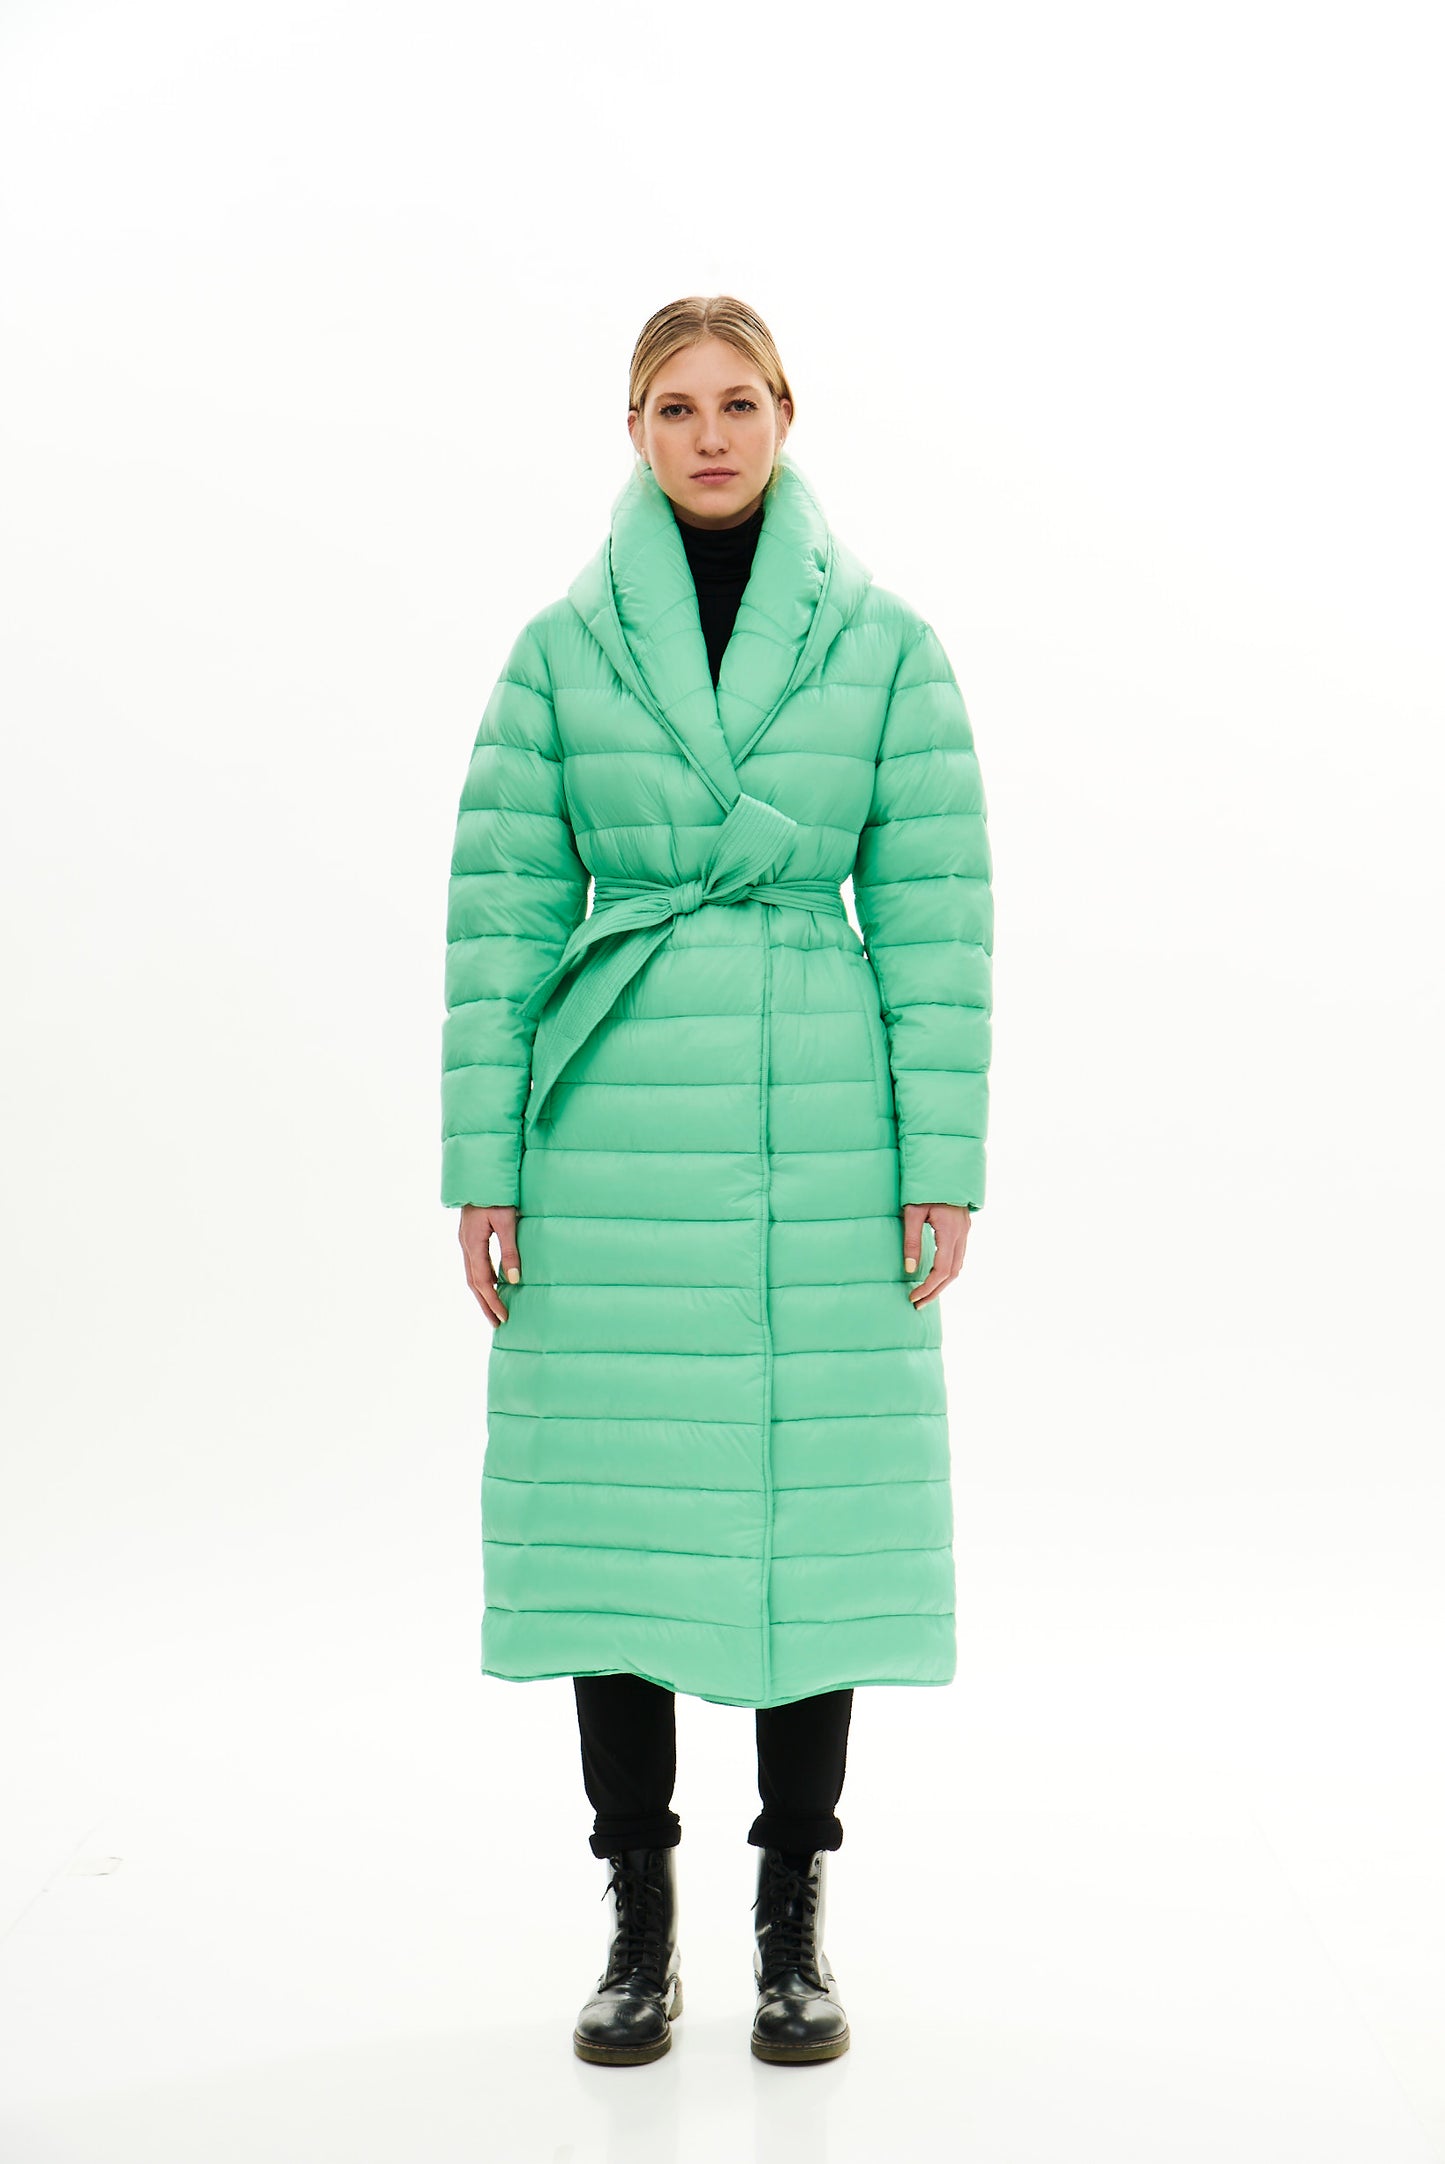 Long Woman Winter Garment / Mint Green // White